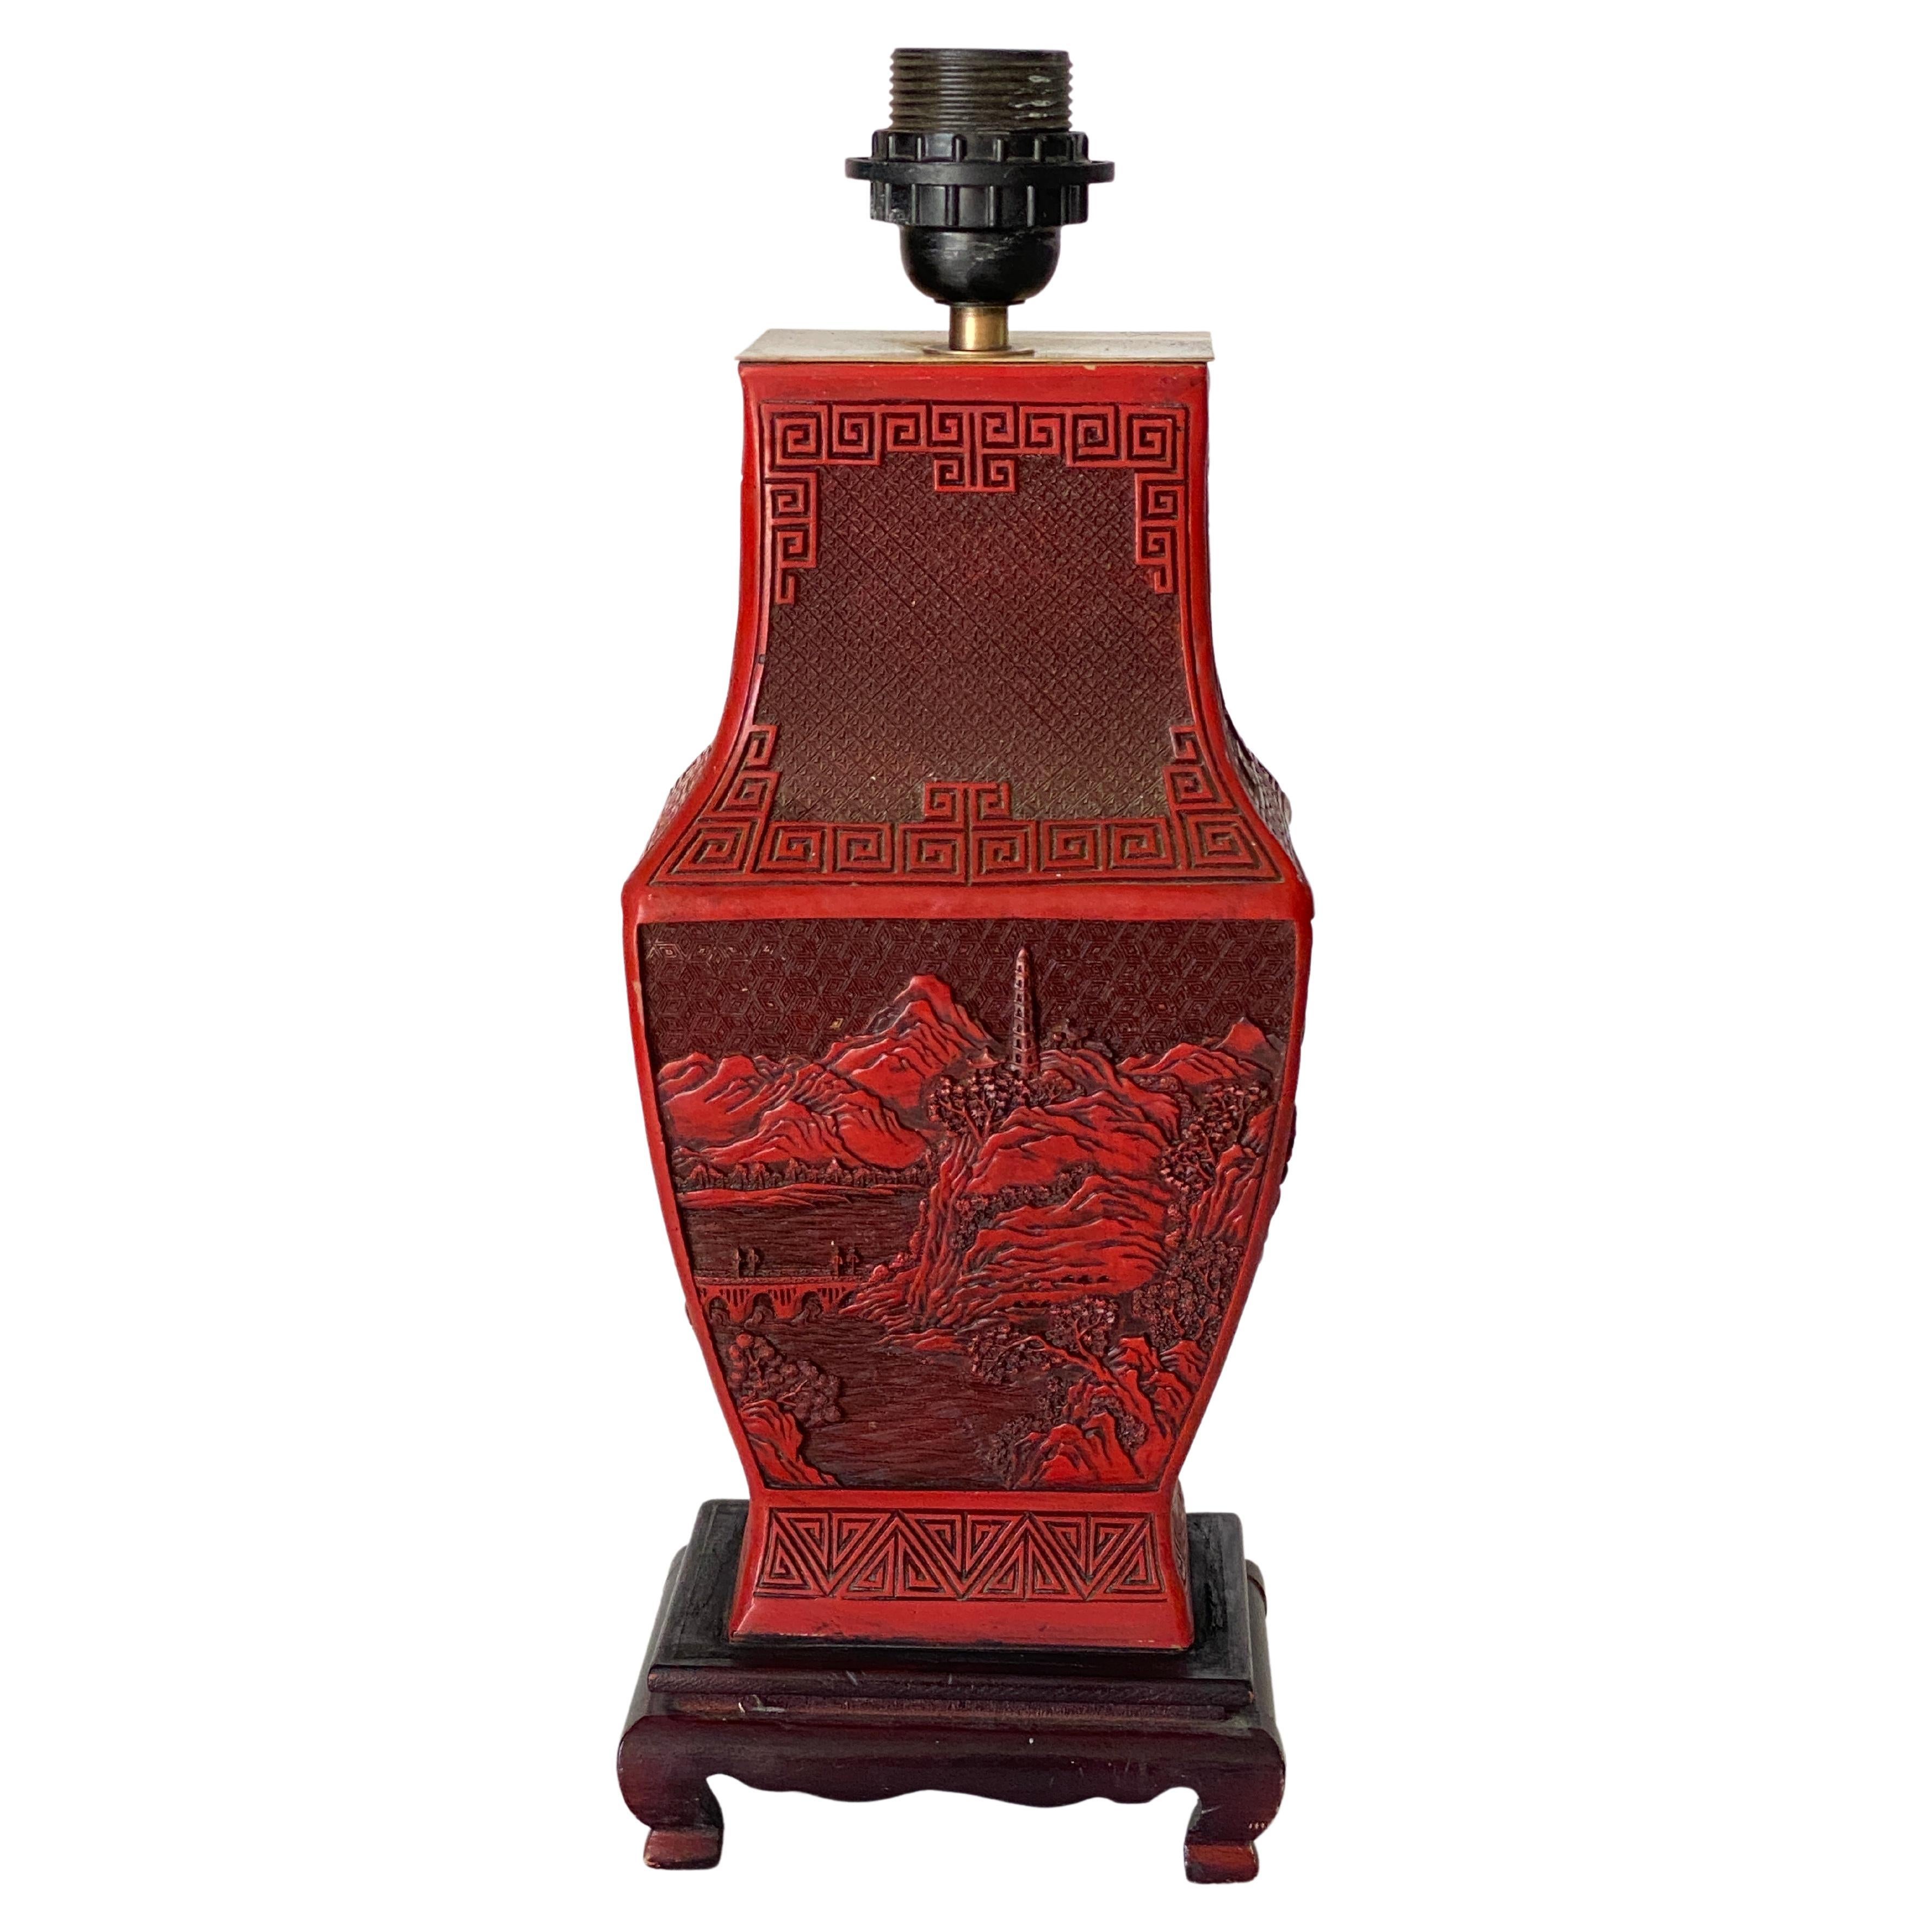 Diese beeindruckende chinesische Zinnobervase ist mit chinesischen Figuren und natürlichen Elementen kunstvoll geschnitzt und steht auf einem Holzsockel. 19. Jahrhundert.
Die Größe der Vase beträgt nur 11,81 Zoll.


US-STECKER-ADAPTER WIRD FÜR DIE